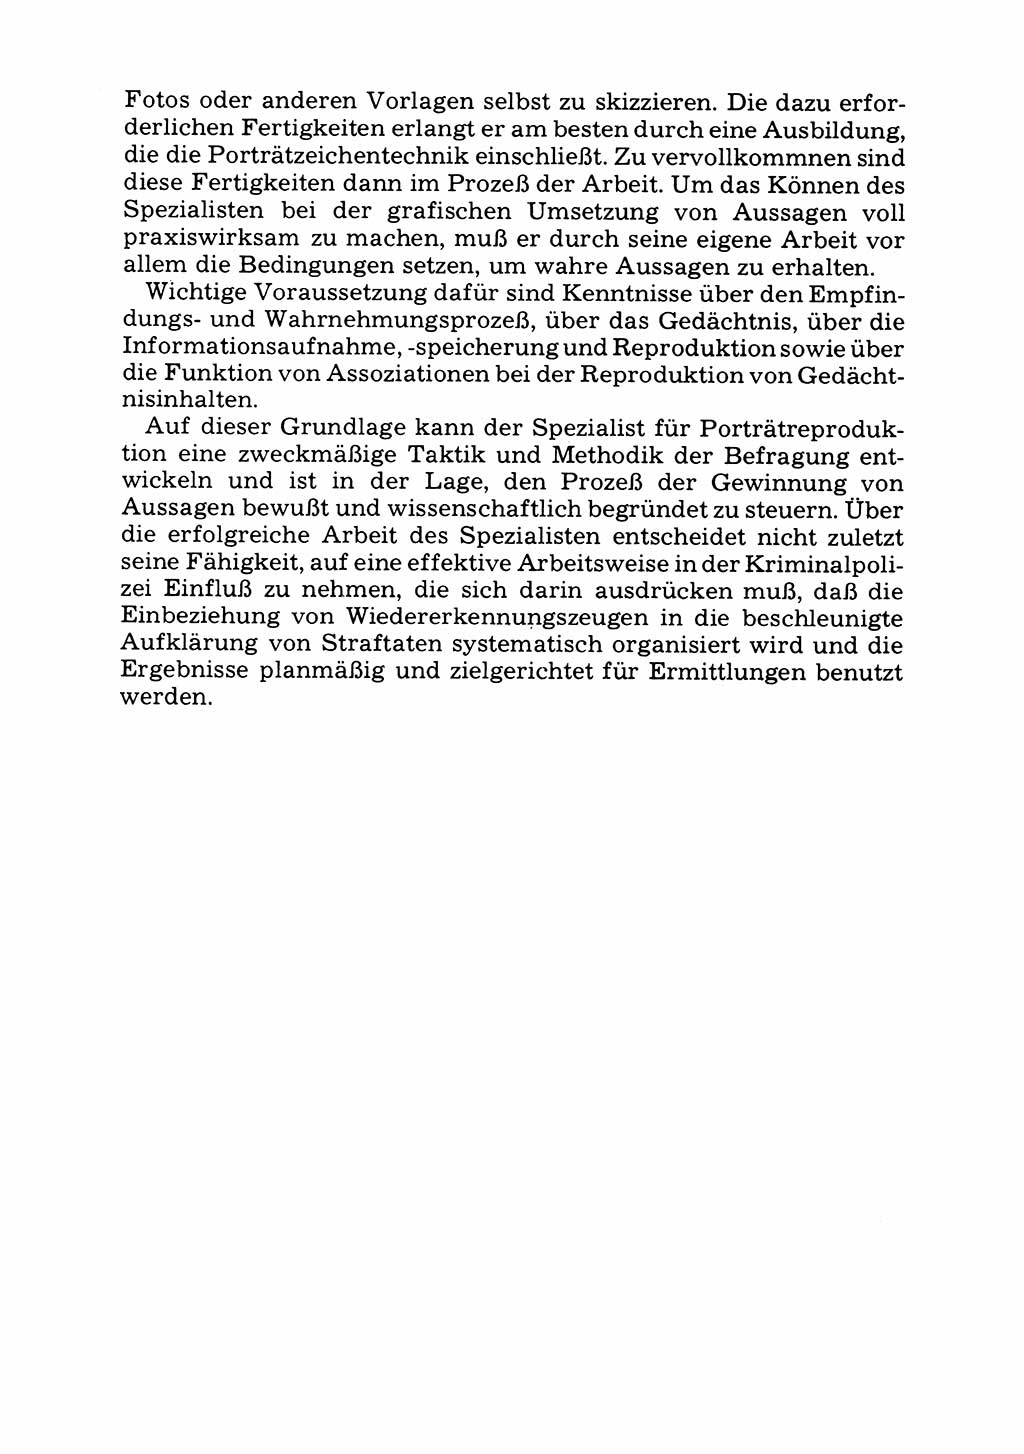 Das subjektive Porträt [Deutsche Demokratische Republik (DDR)] 1981, Seite 132 (Subj. Port. DDR 1981, S. 132)